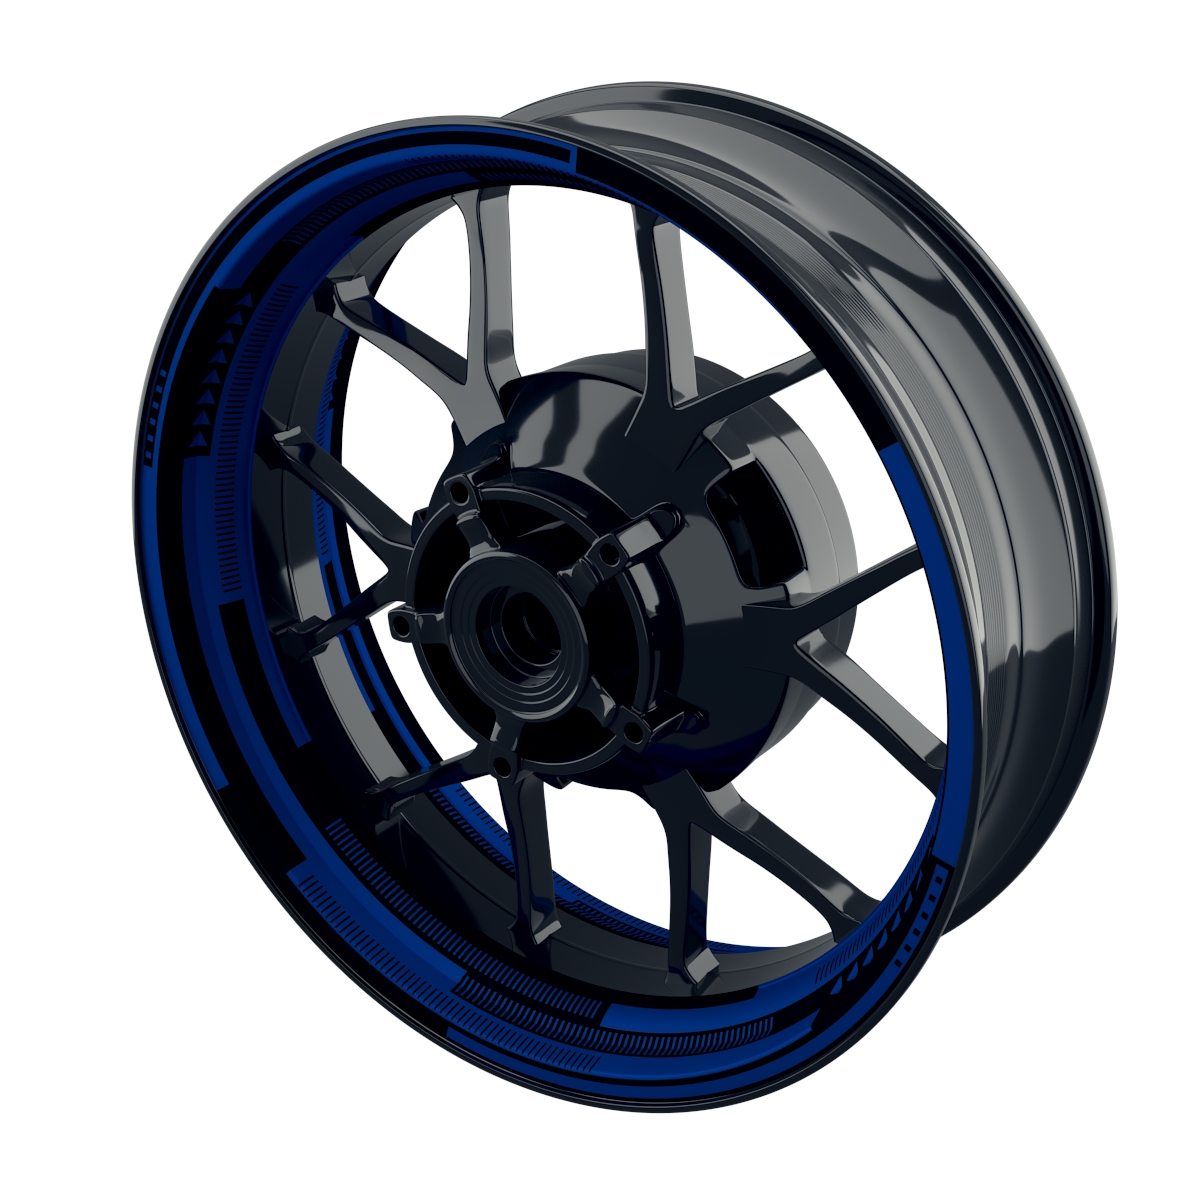 Cybertech black Rim Decals  Wheelsticker Premium